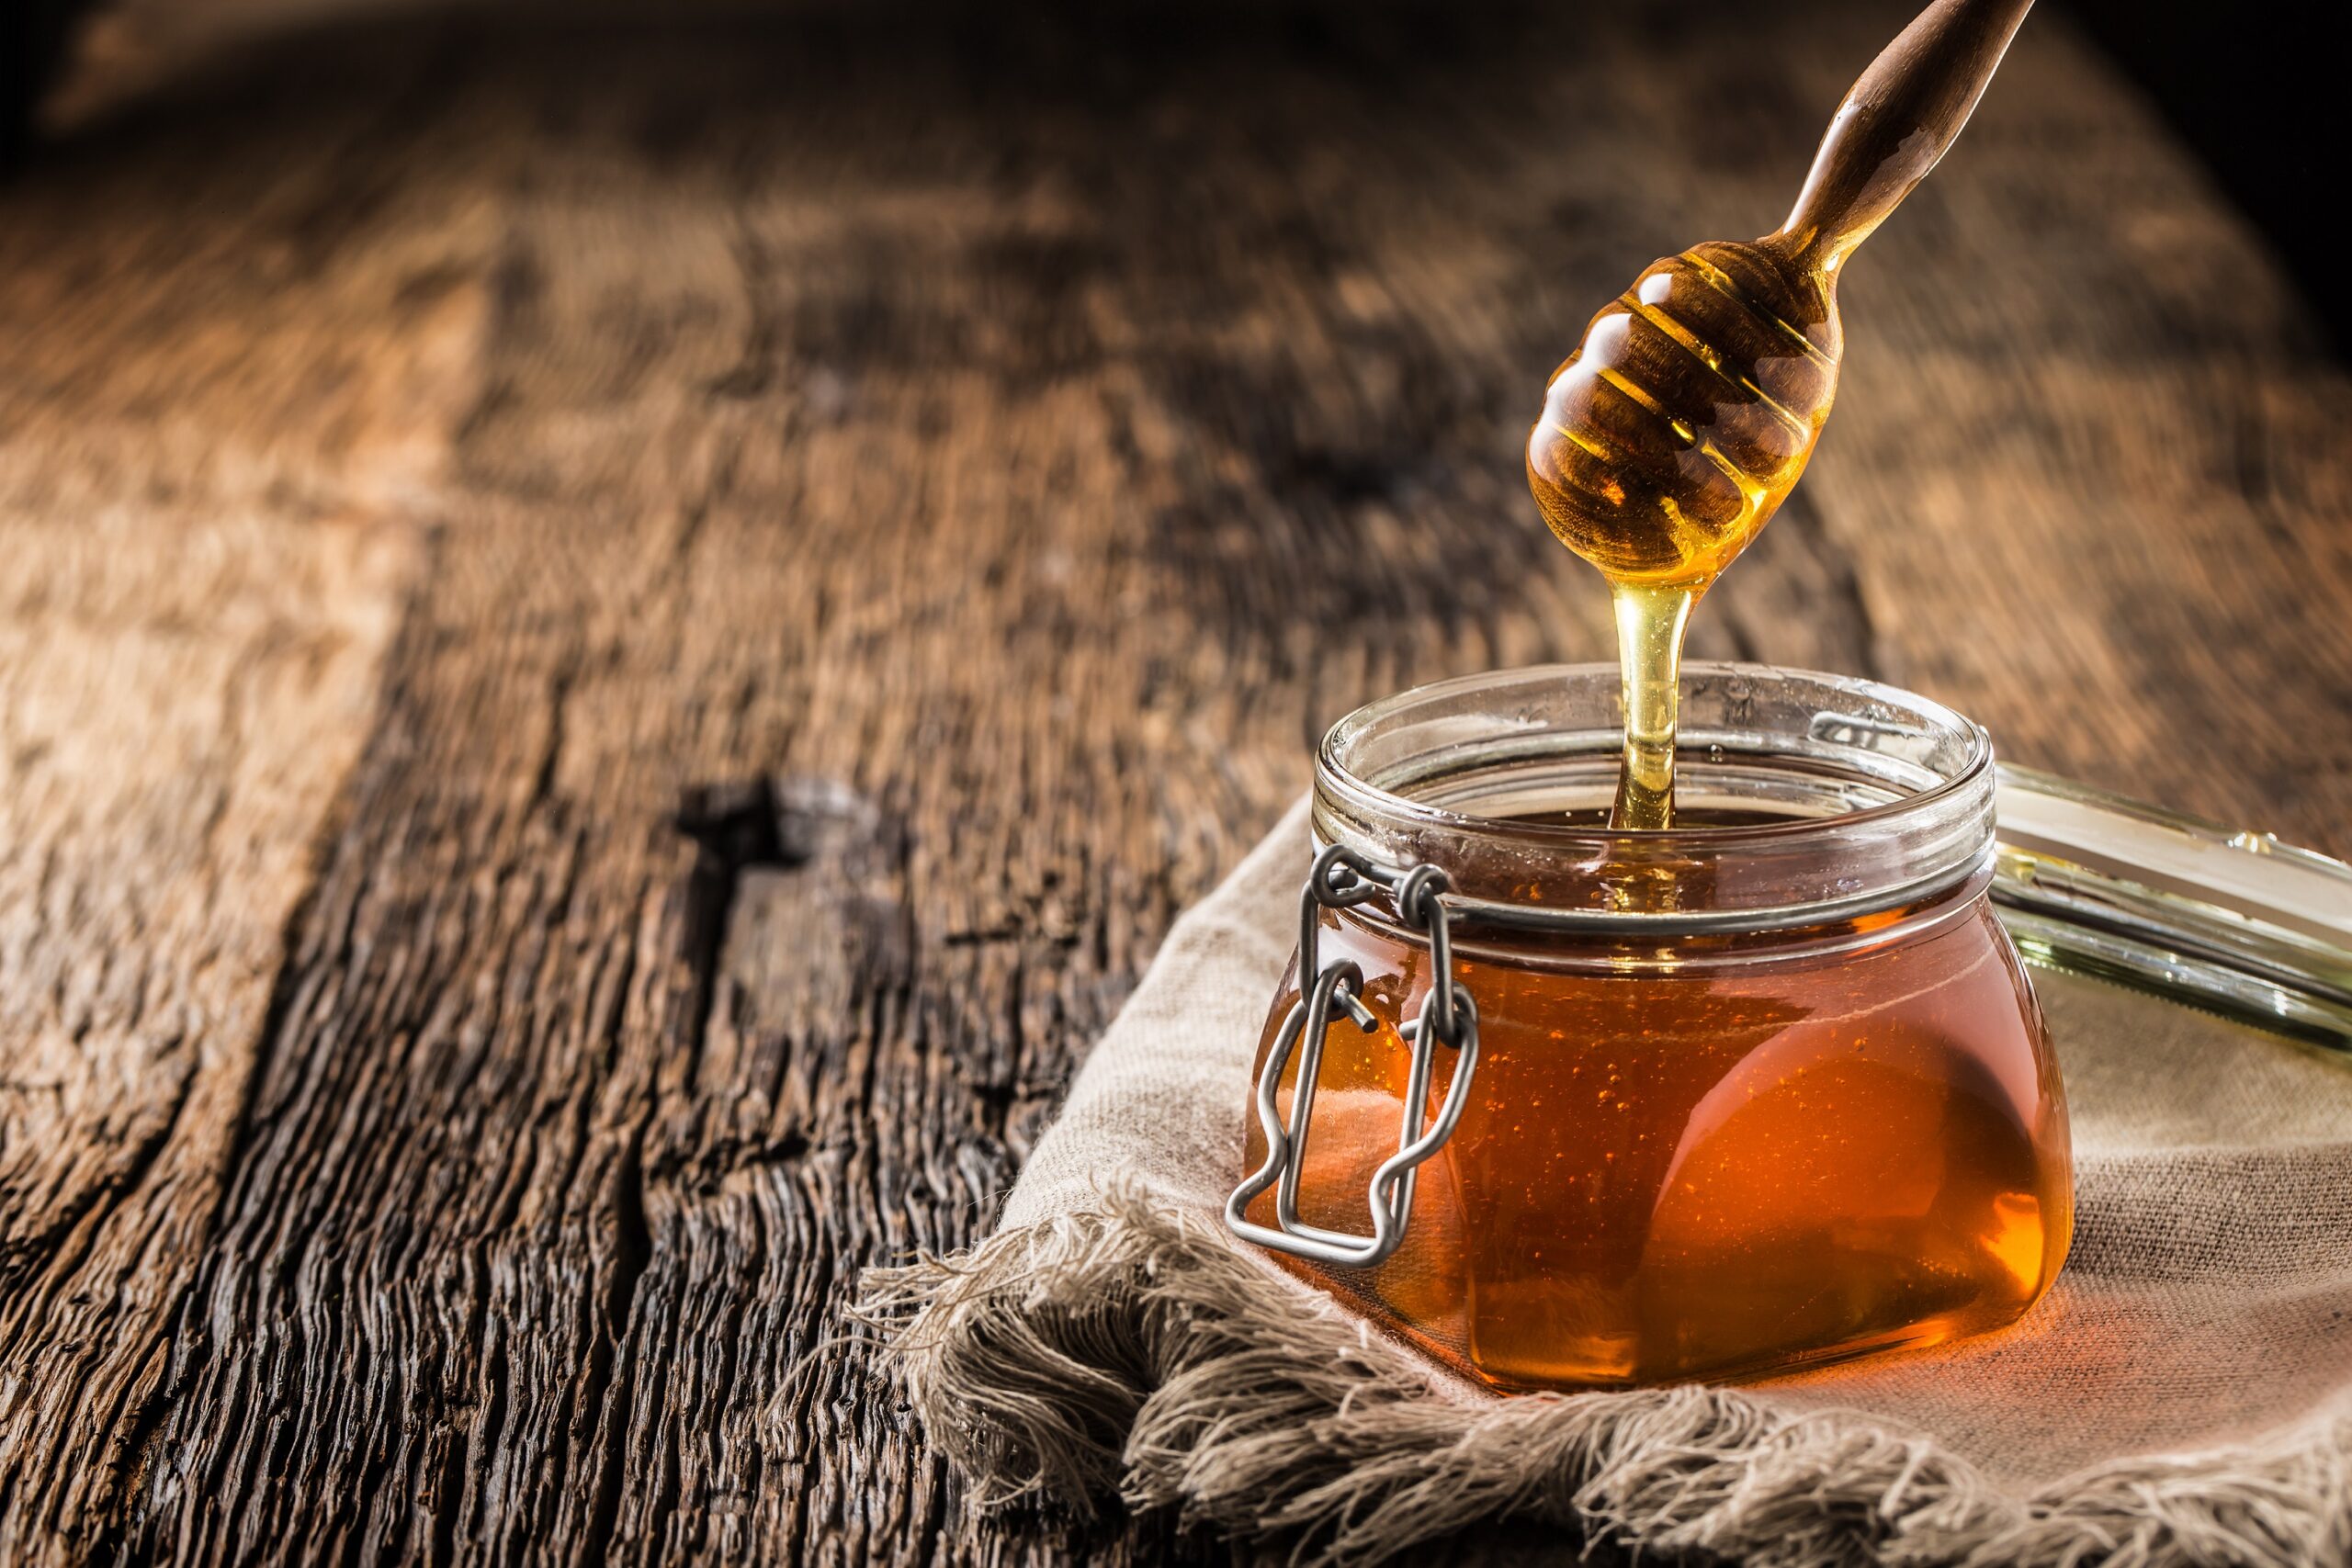 Honig: Natürliches Süßungsmittel mit gesundheitlichen Vorteilen ...